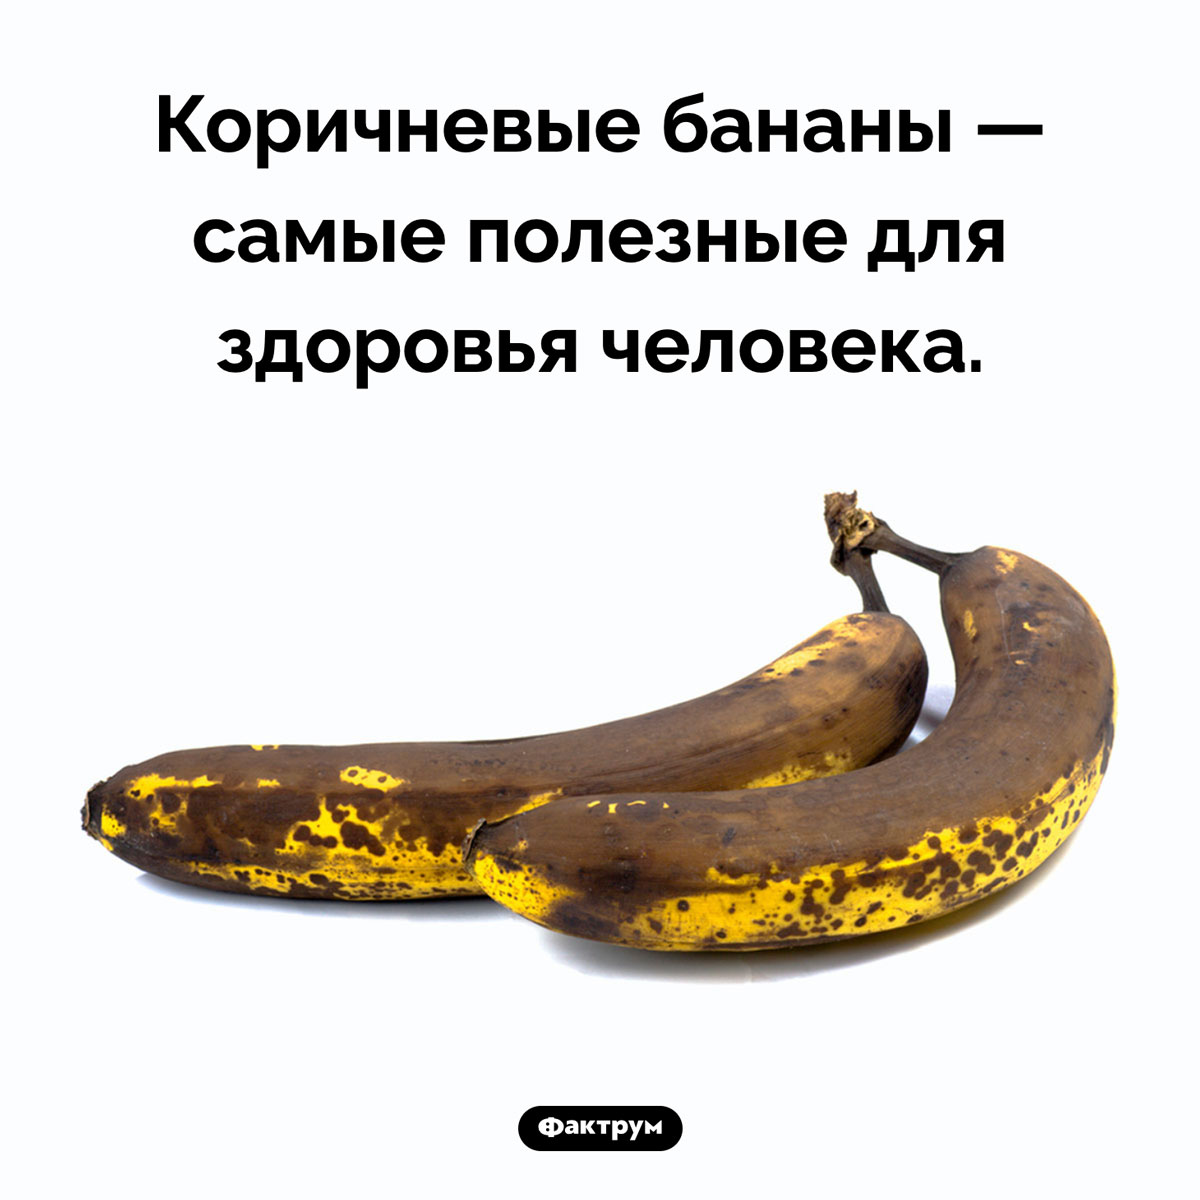 Какие бананы самые полезные. Коричневые бананы — самые полезные для здоровья человека.